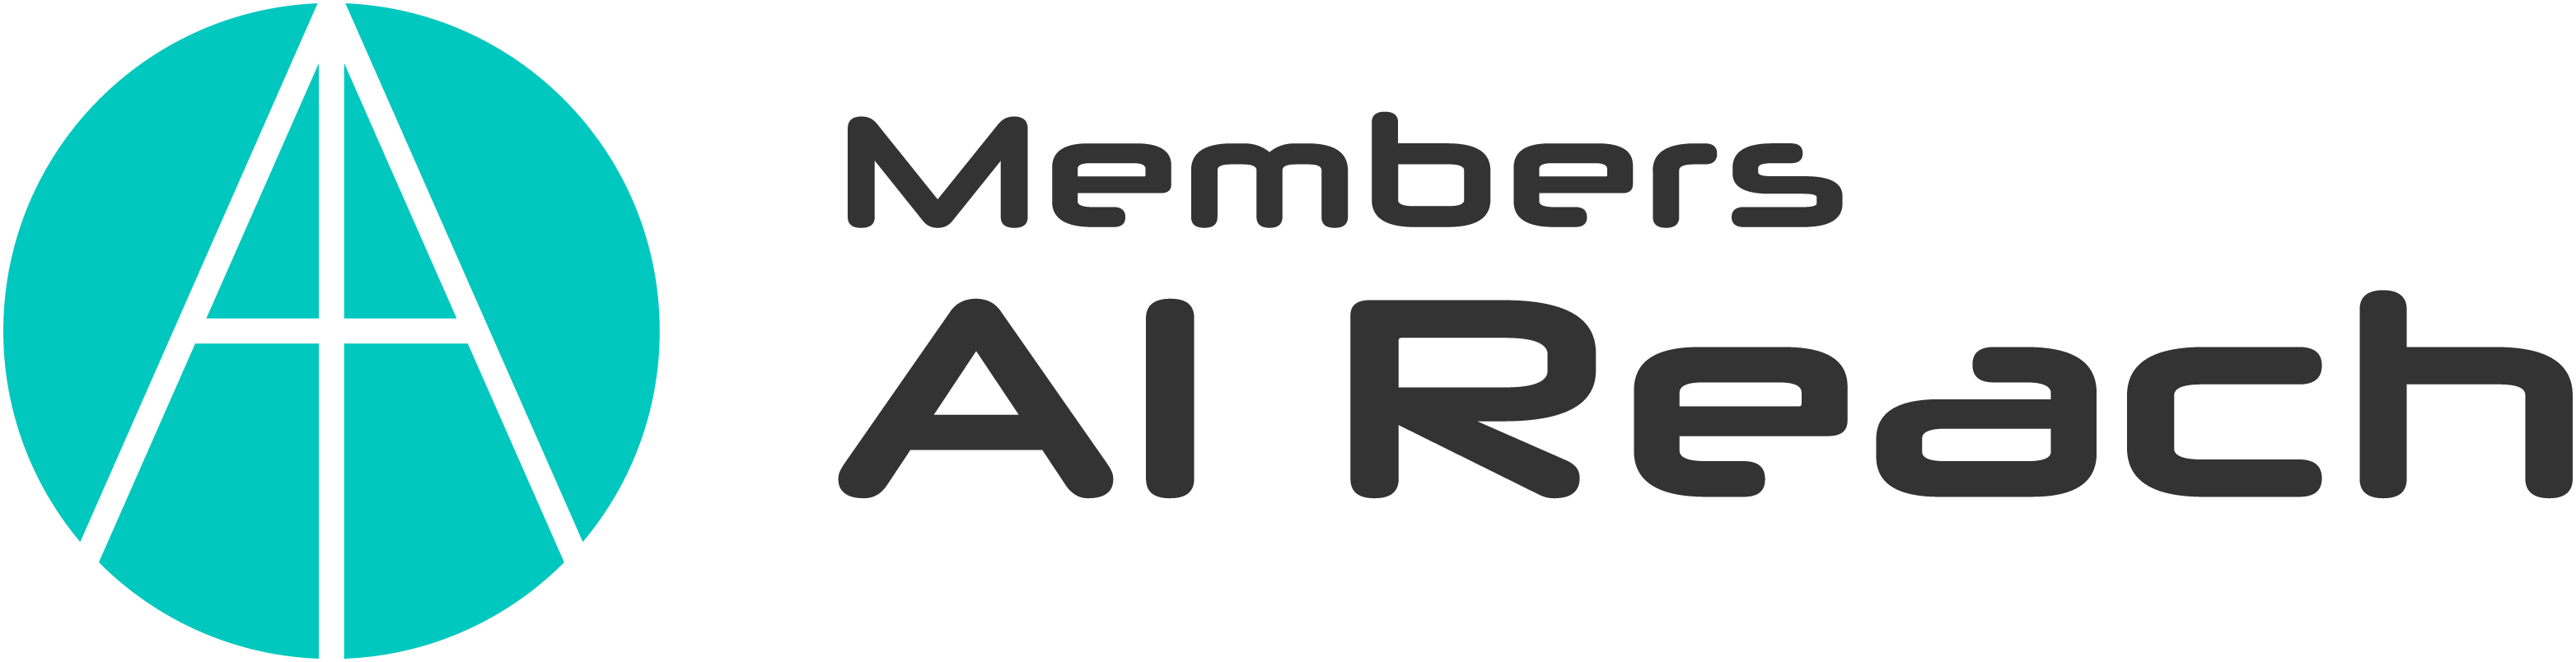 AIR_logo